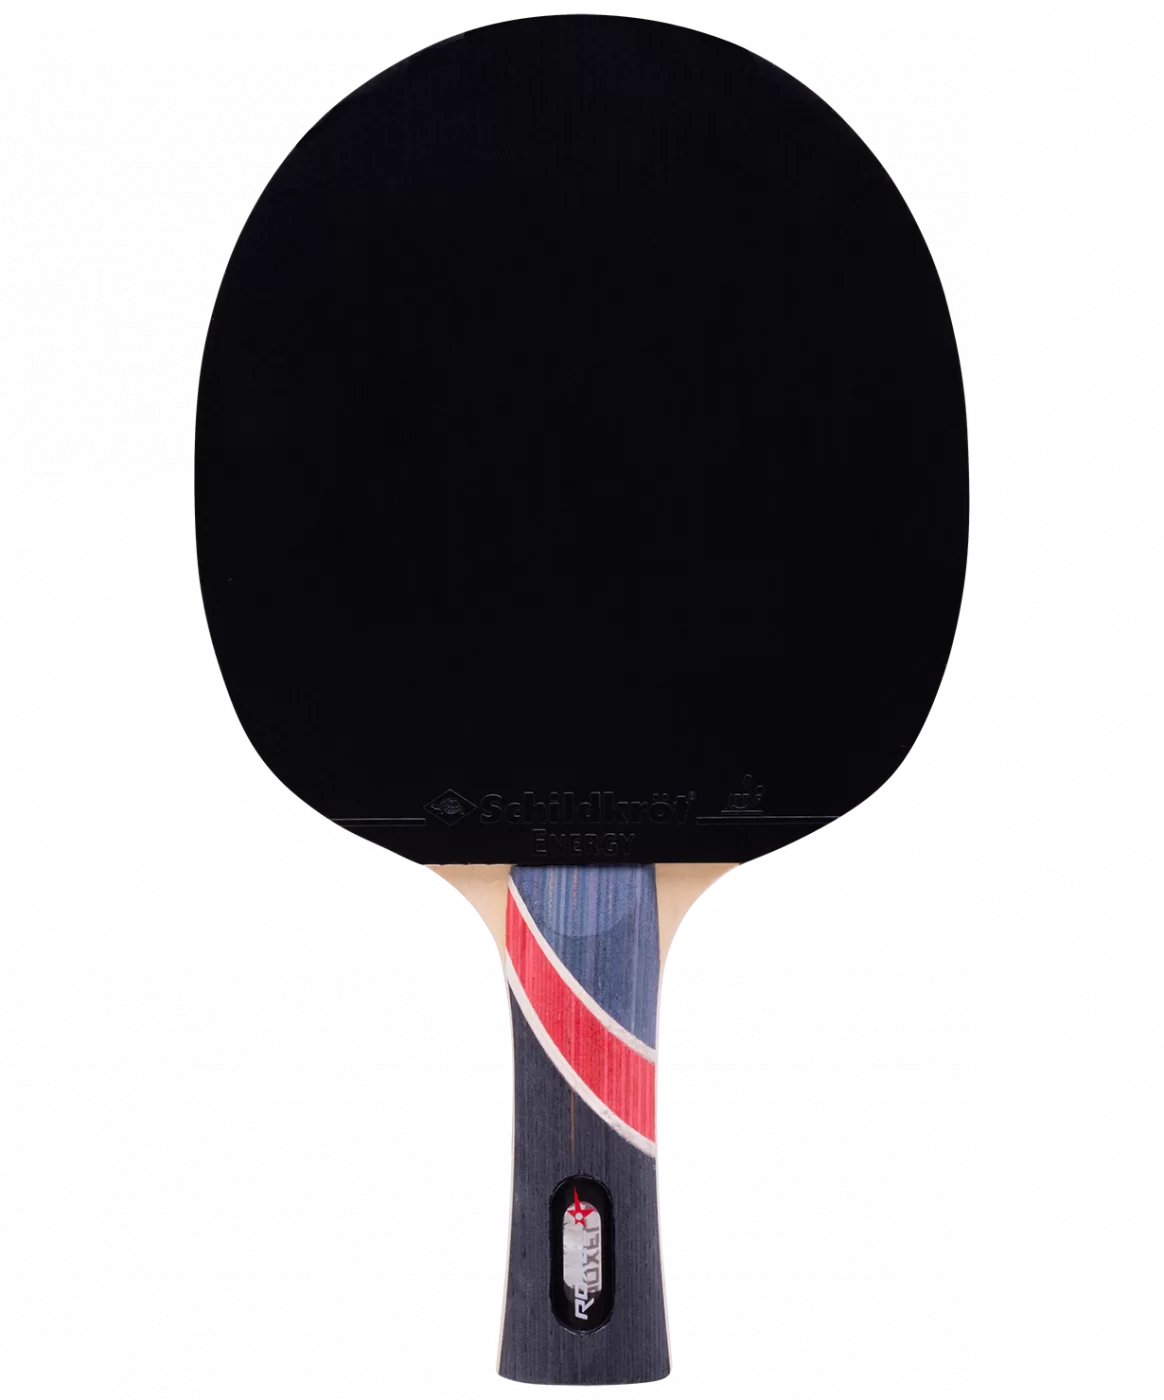 Реальное фото Ракетка для настольного тенниса Roxel 5* Superior коническая 15359 от магазина СпортЕВ